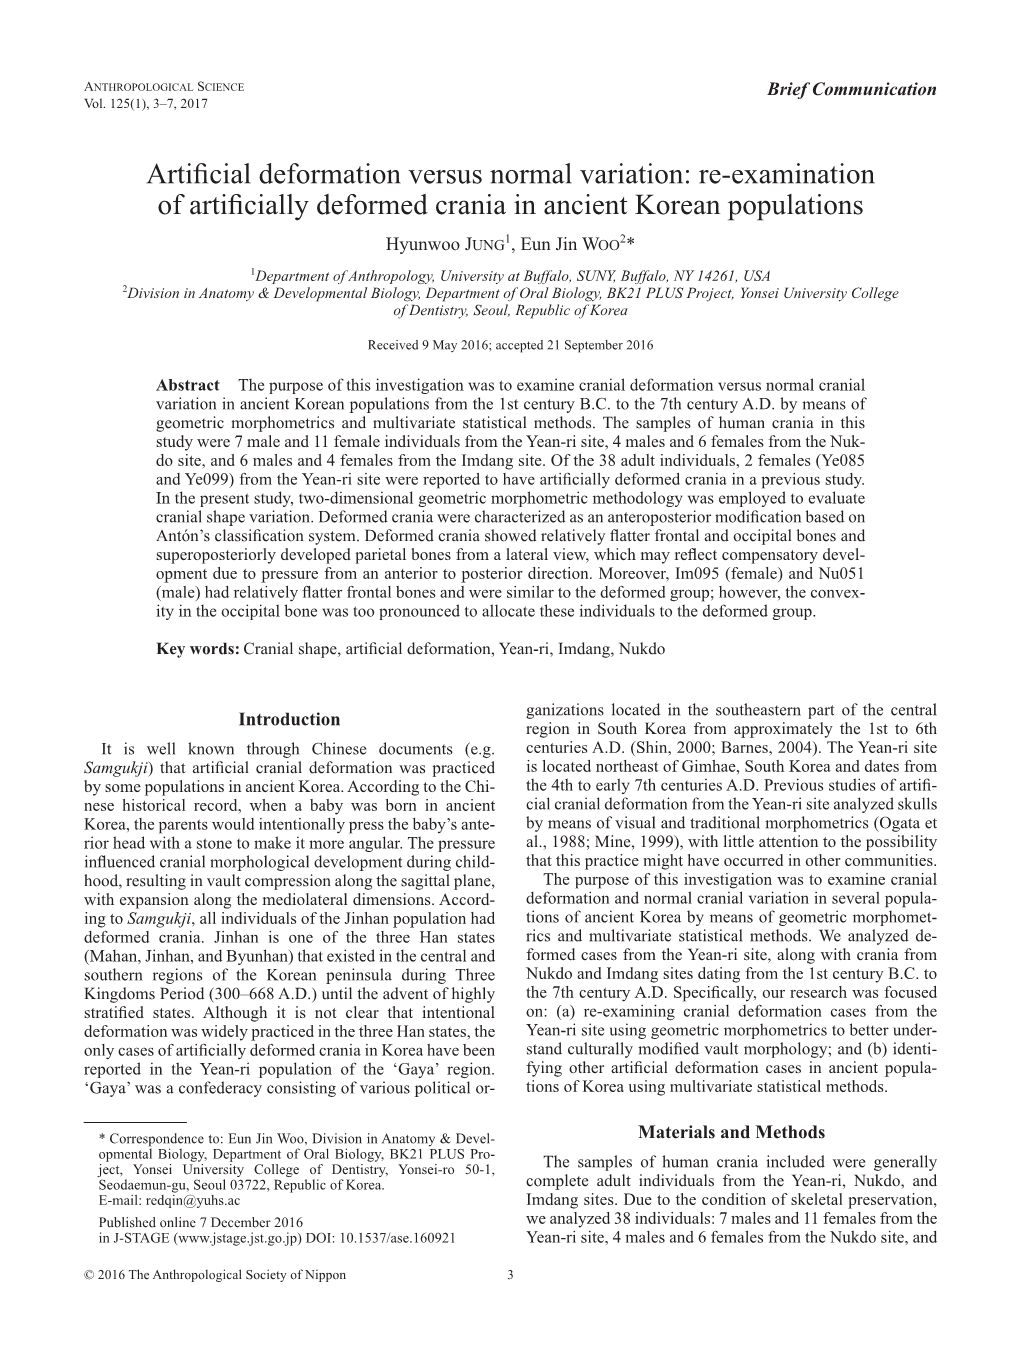 Re-Examination of Artificially Deformed Crania in Ancient Korean Populations